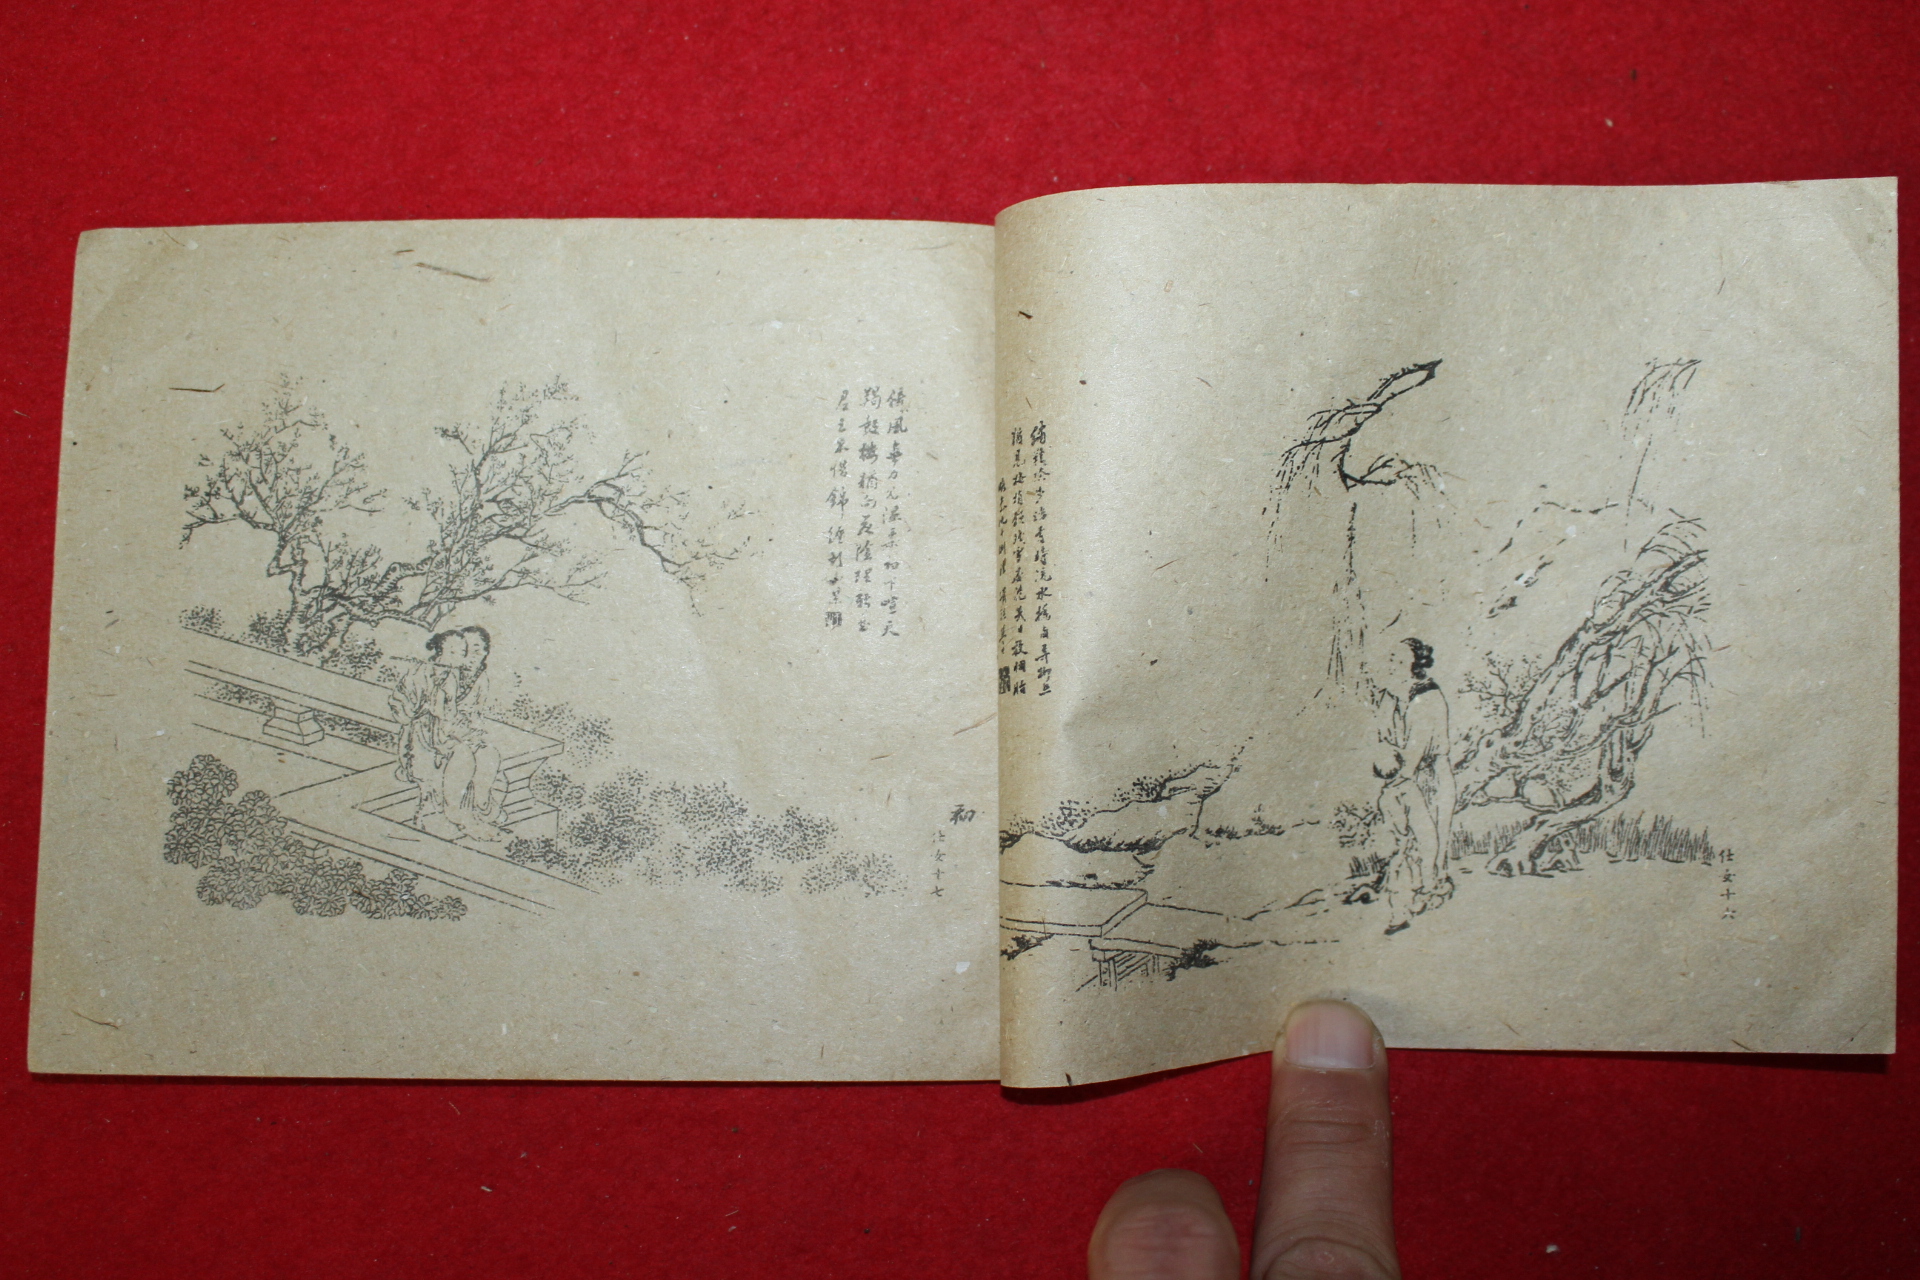 중국간행본 고금명인화고(古今名人畵稿) 1책